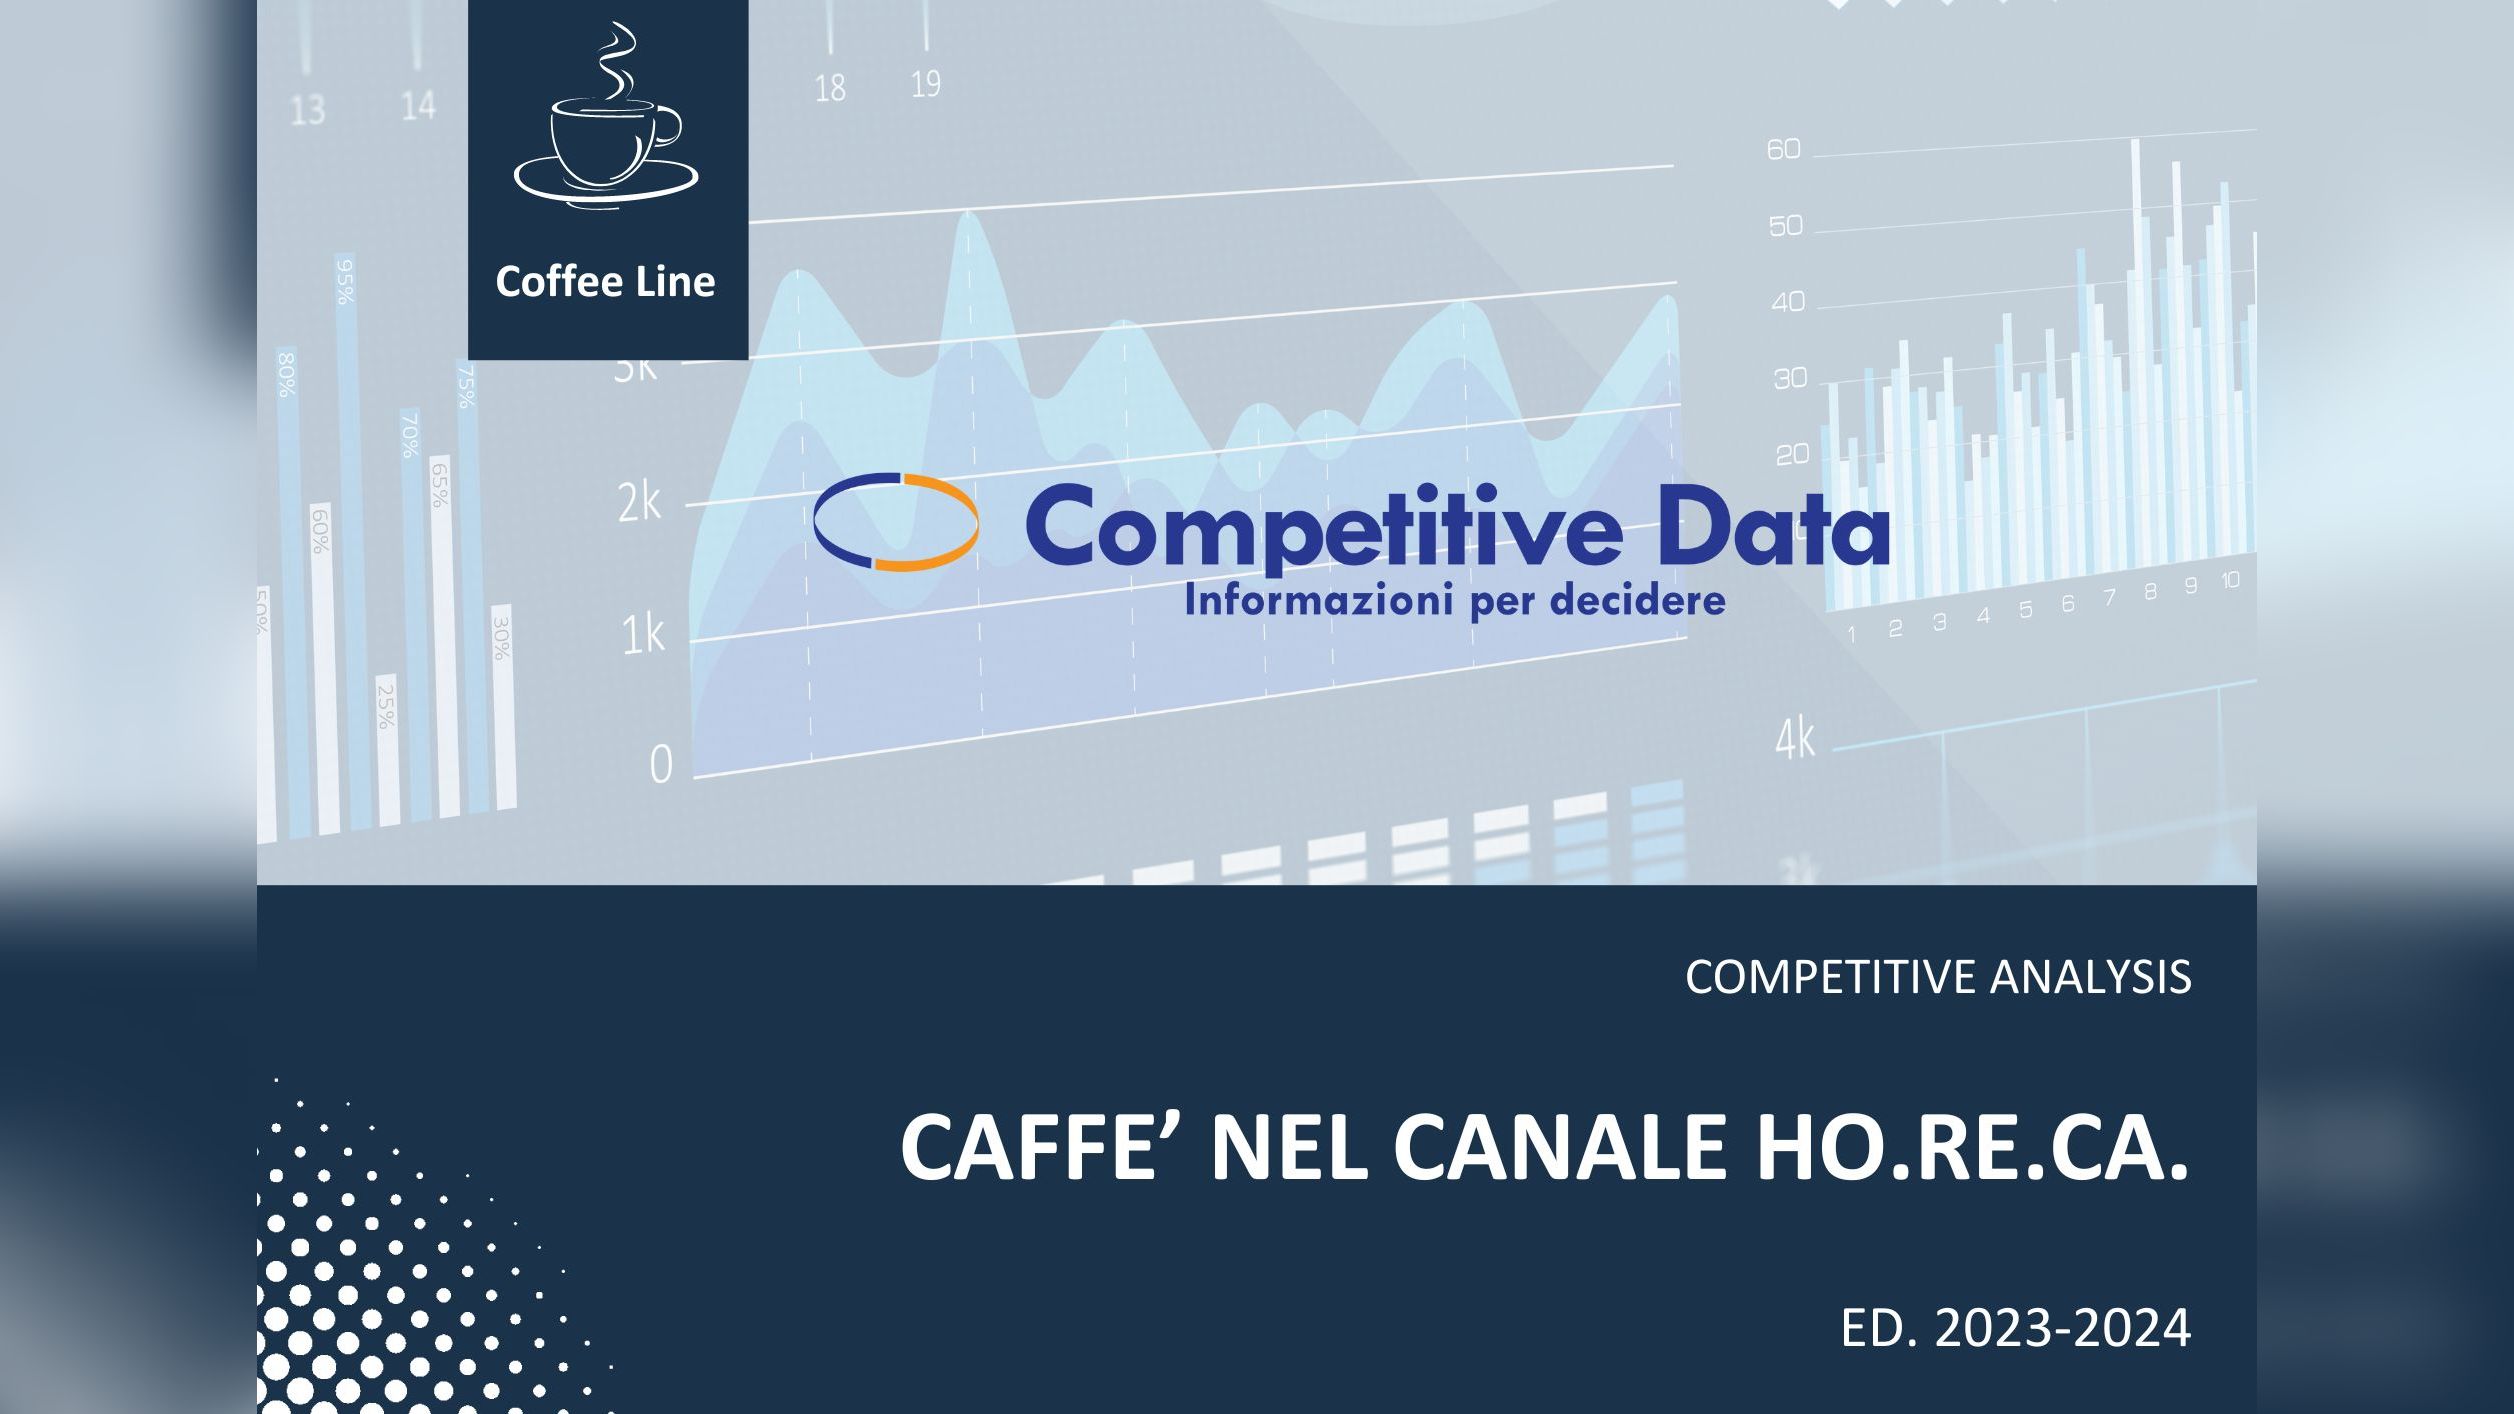 L’analisi Competitive Data del caffè nel canale Horeca sul portale Beverfood